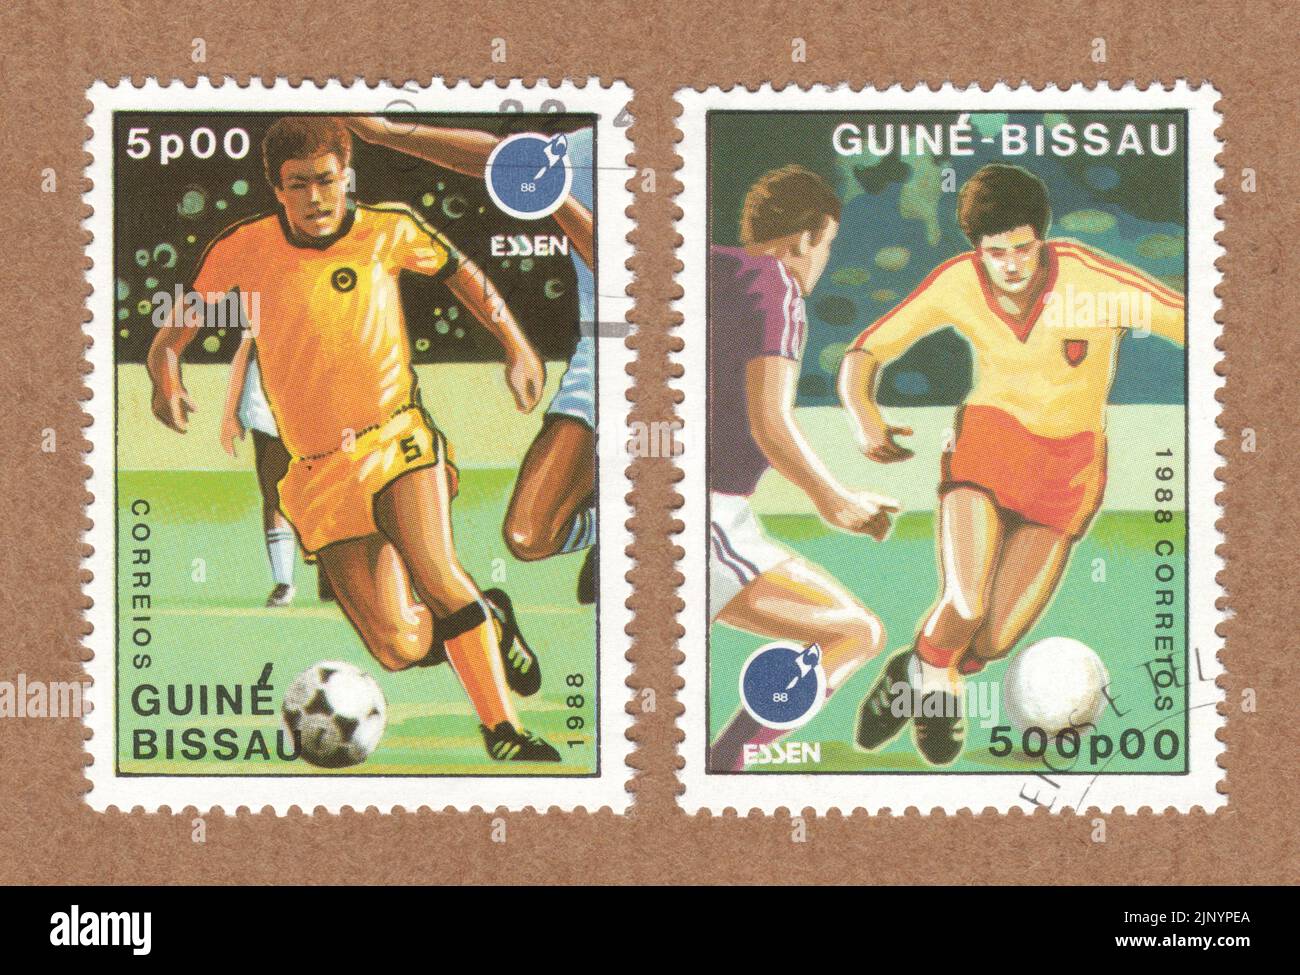 Francobolli Guine Bissau, del campionato tedesco ed europeo di calcio di Essen 88, creati per la 1988° edizione della Mostra internazionale dei francobolli Foto Stock